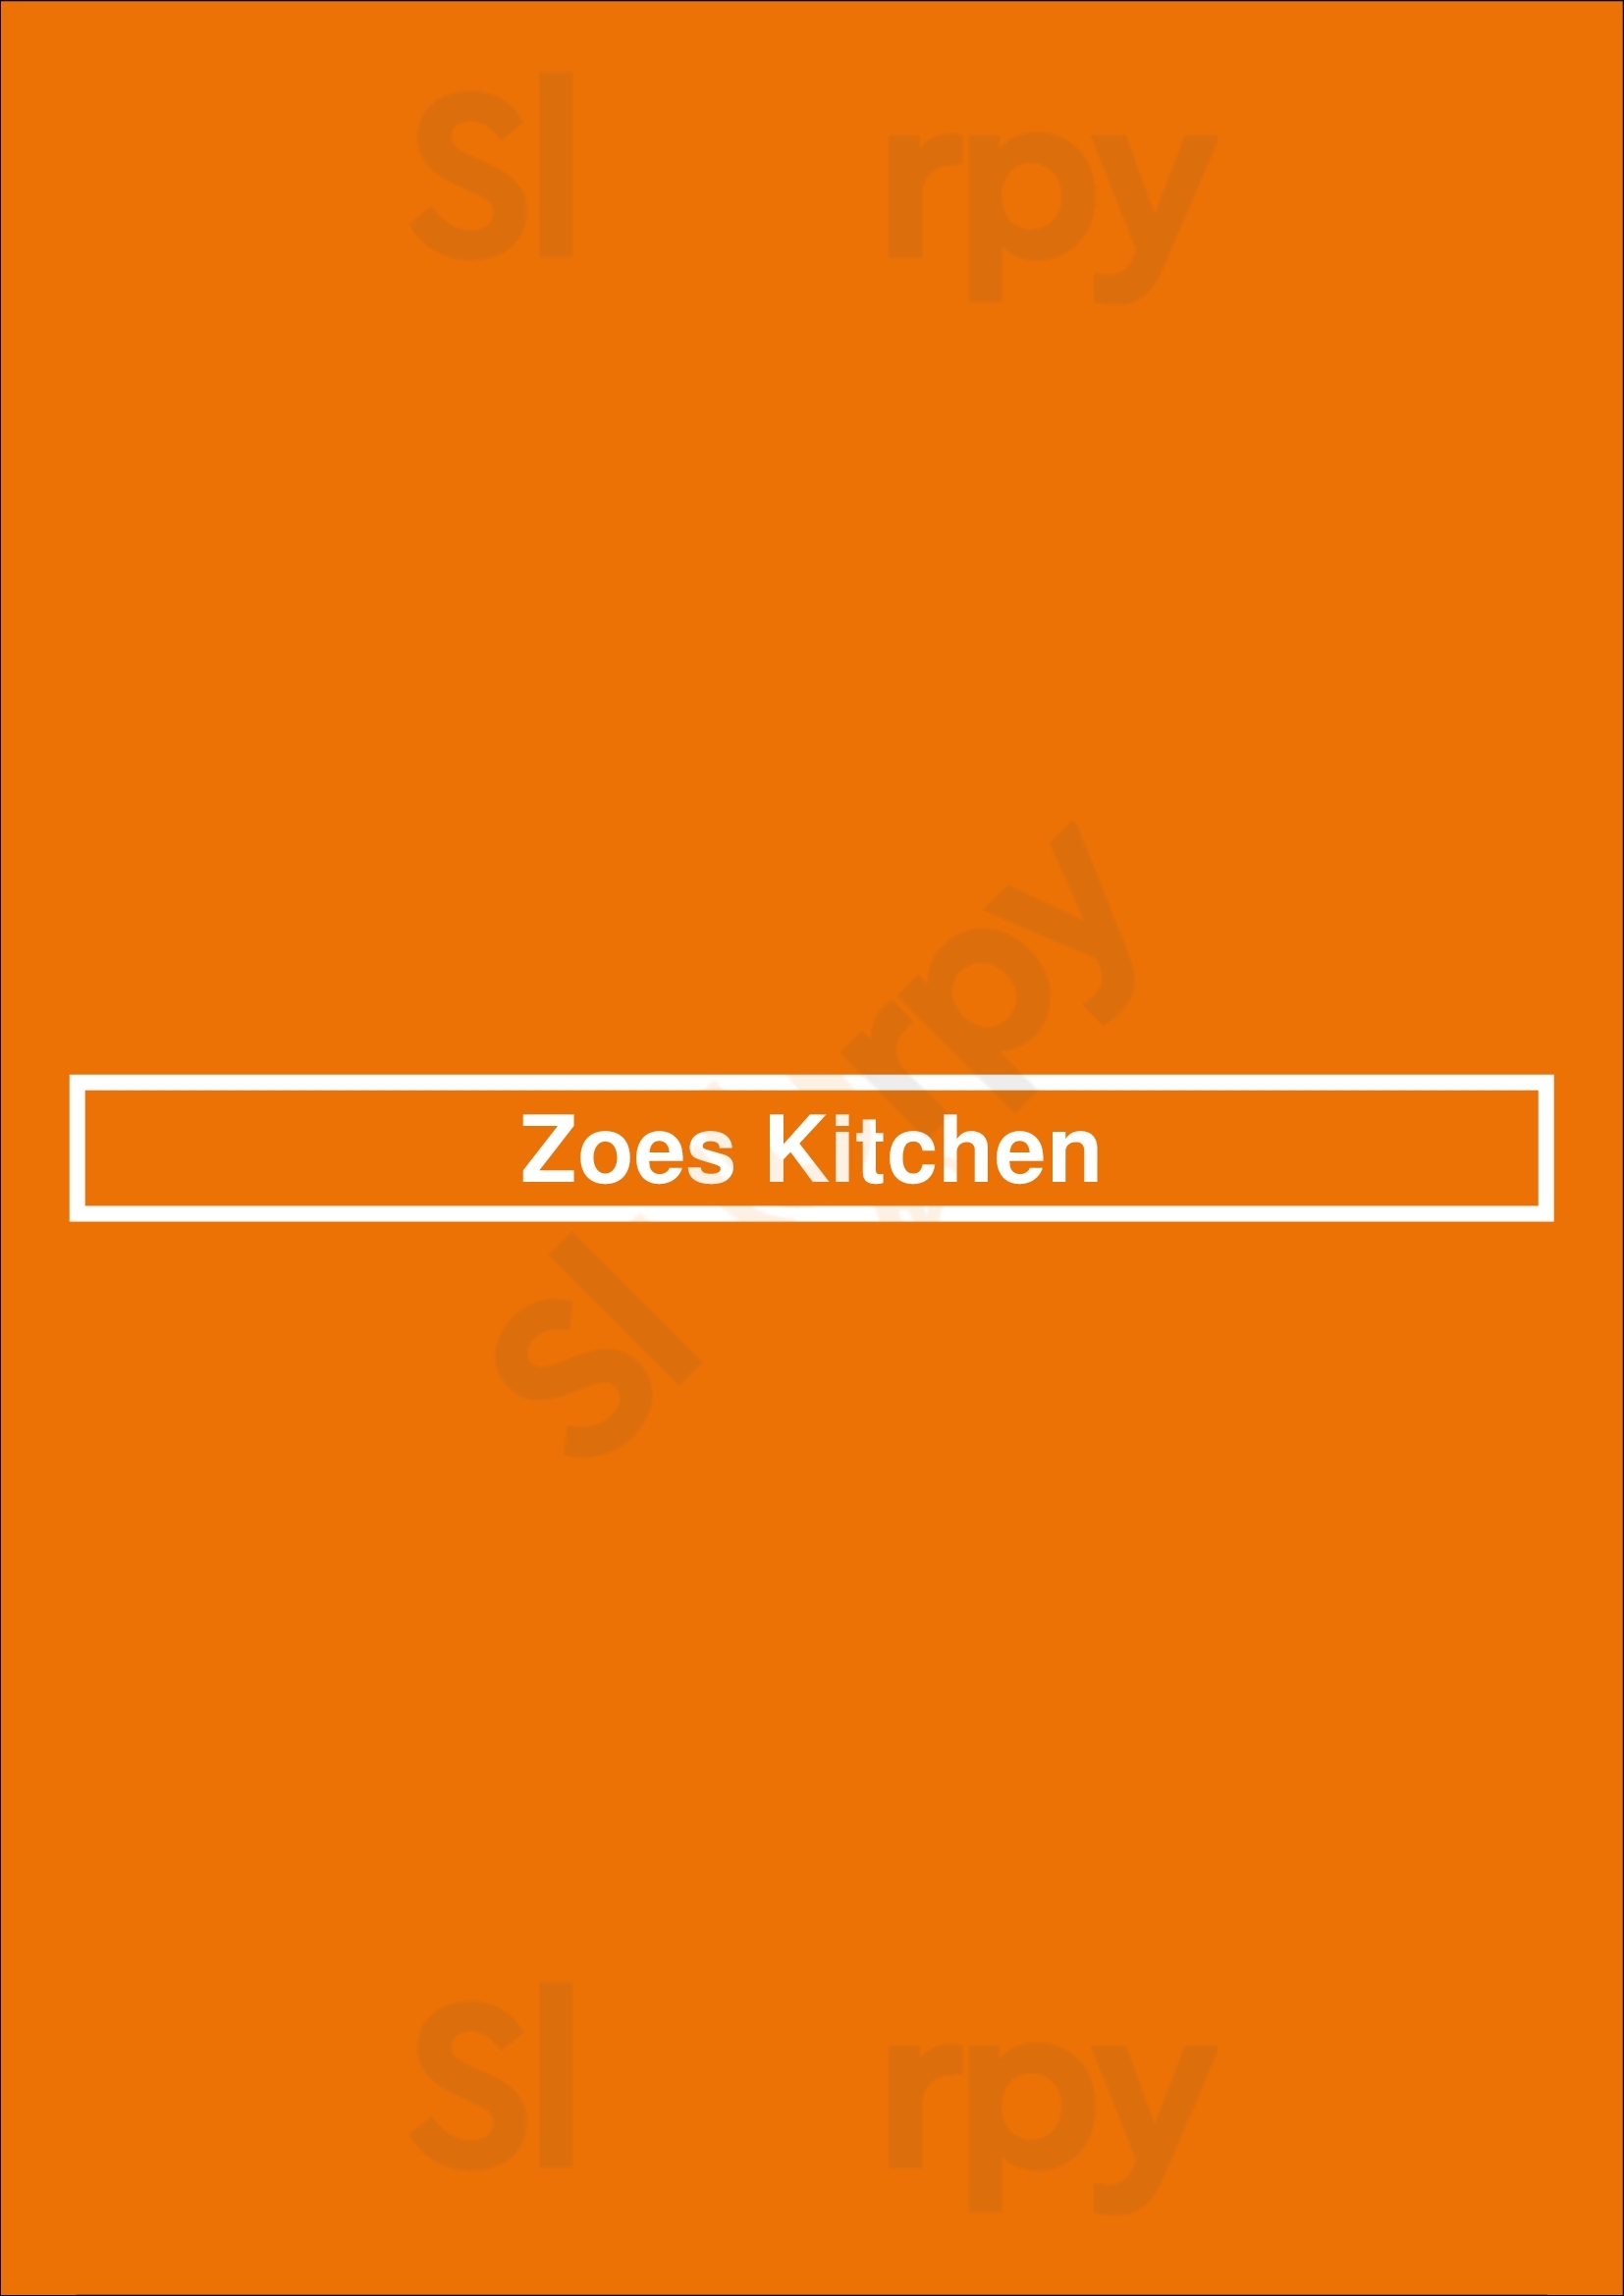 Zoes Kitchen Newark Menu - 1